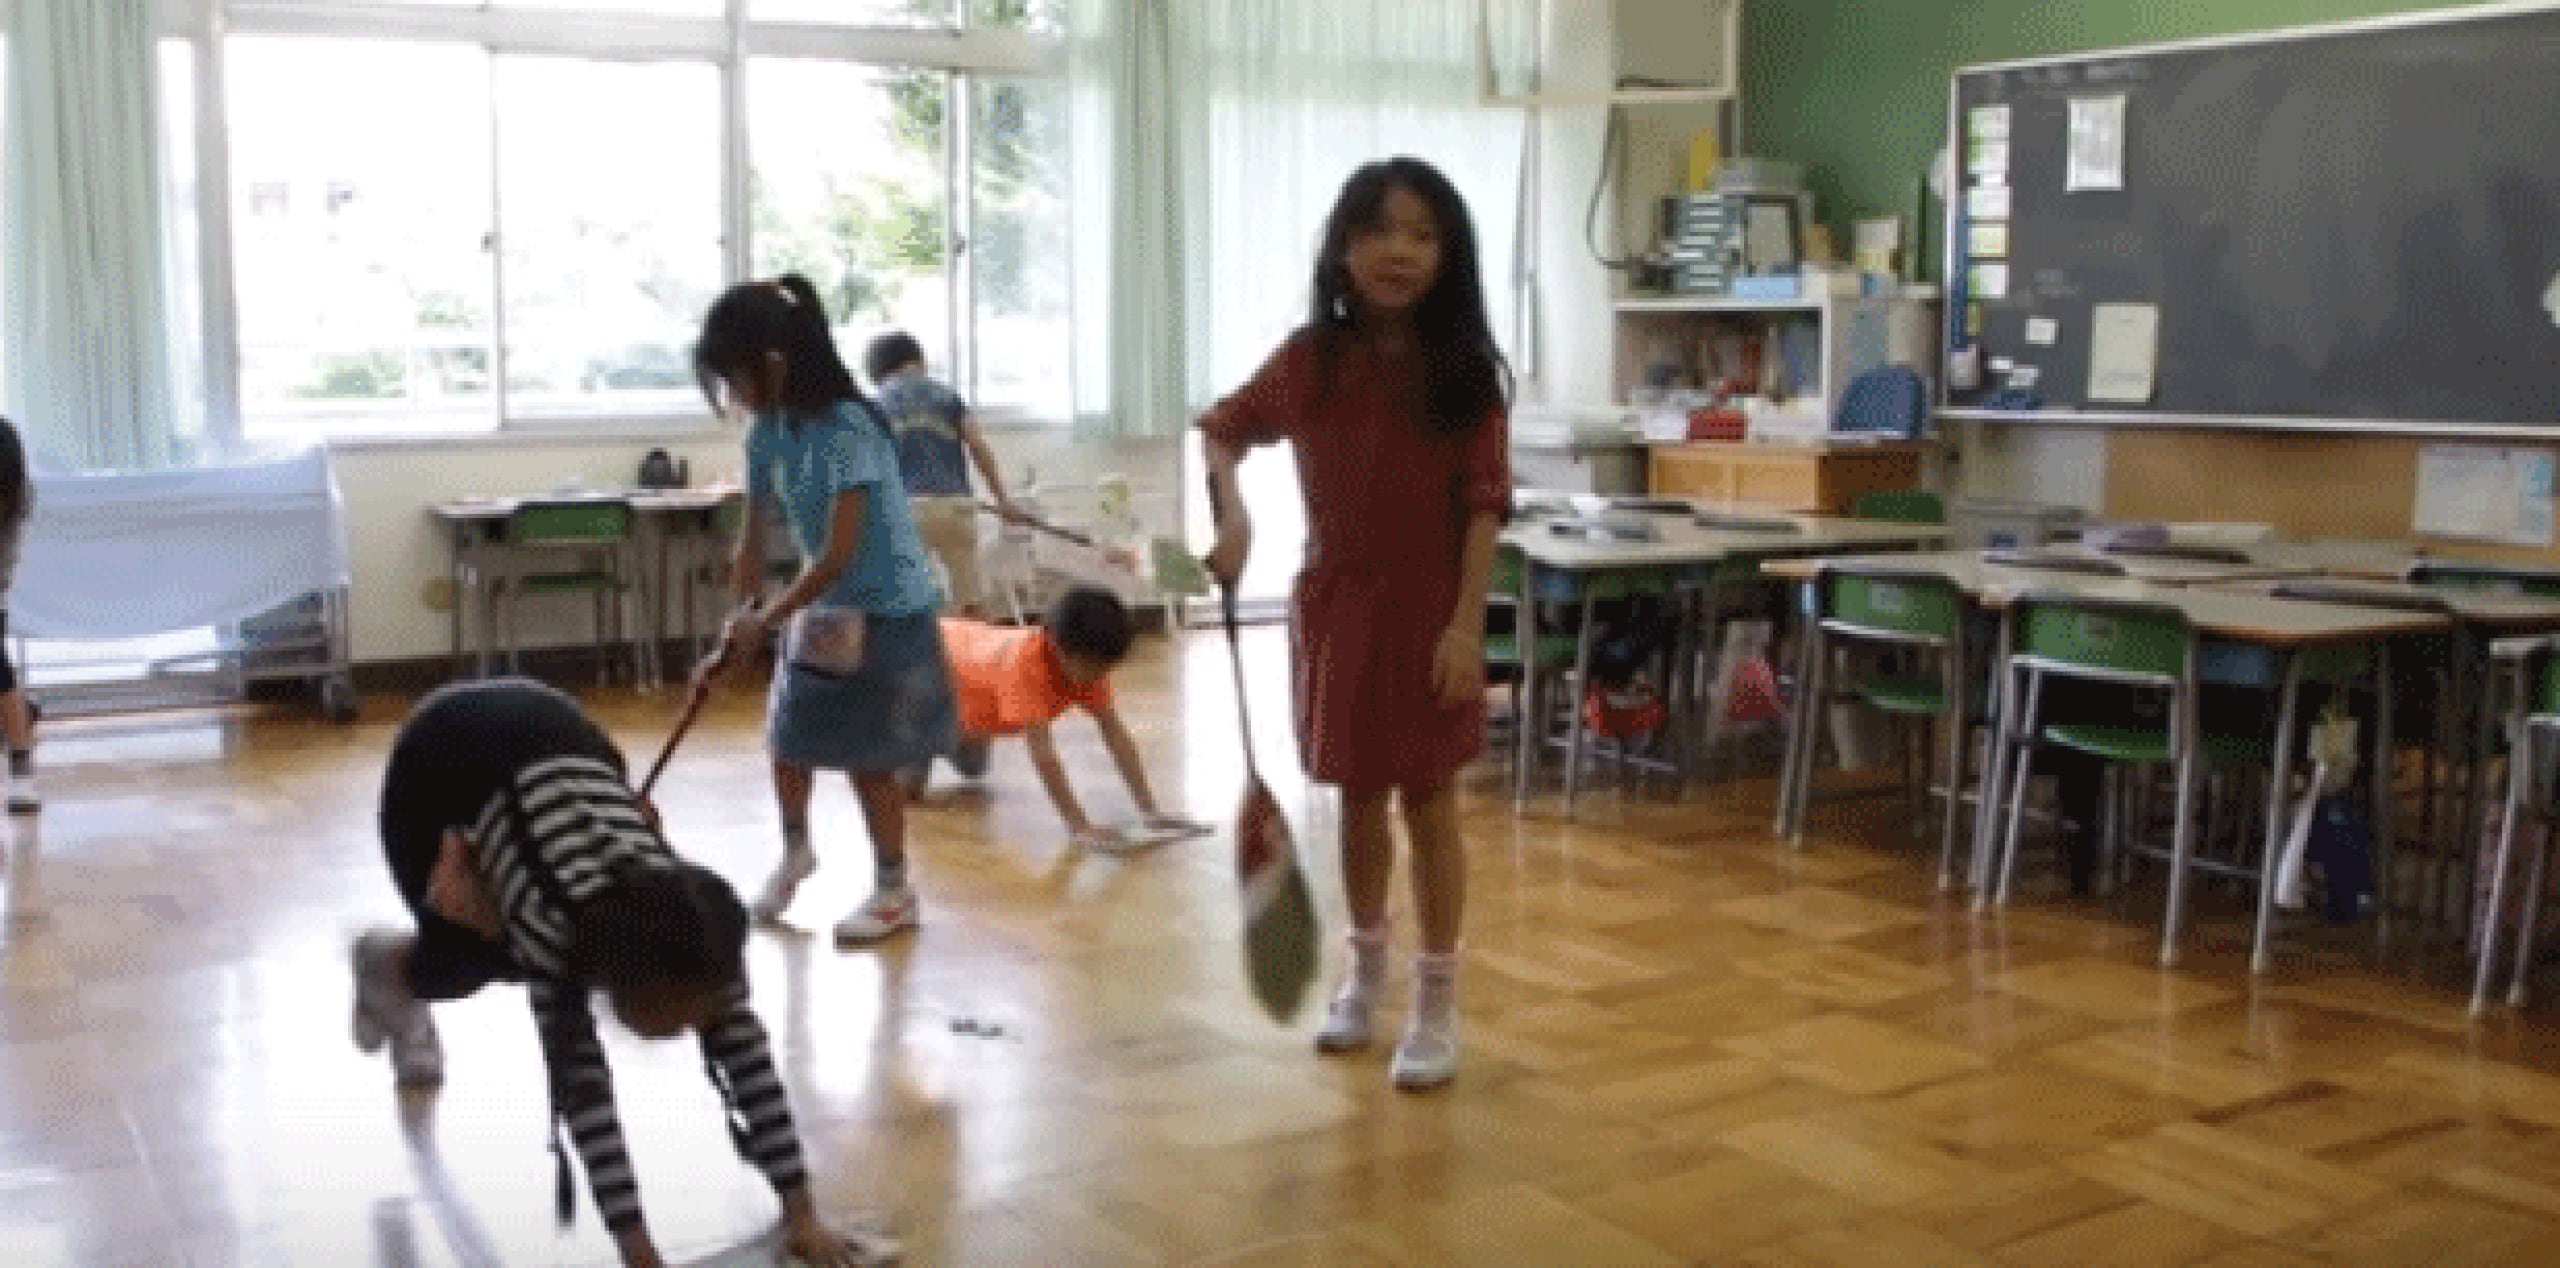 Asalto Audaz lanzador Los niños japoneses limpian los baños de sus escuelas - Primera Hora